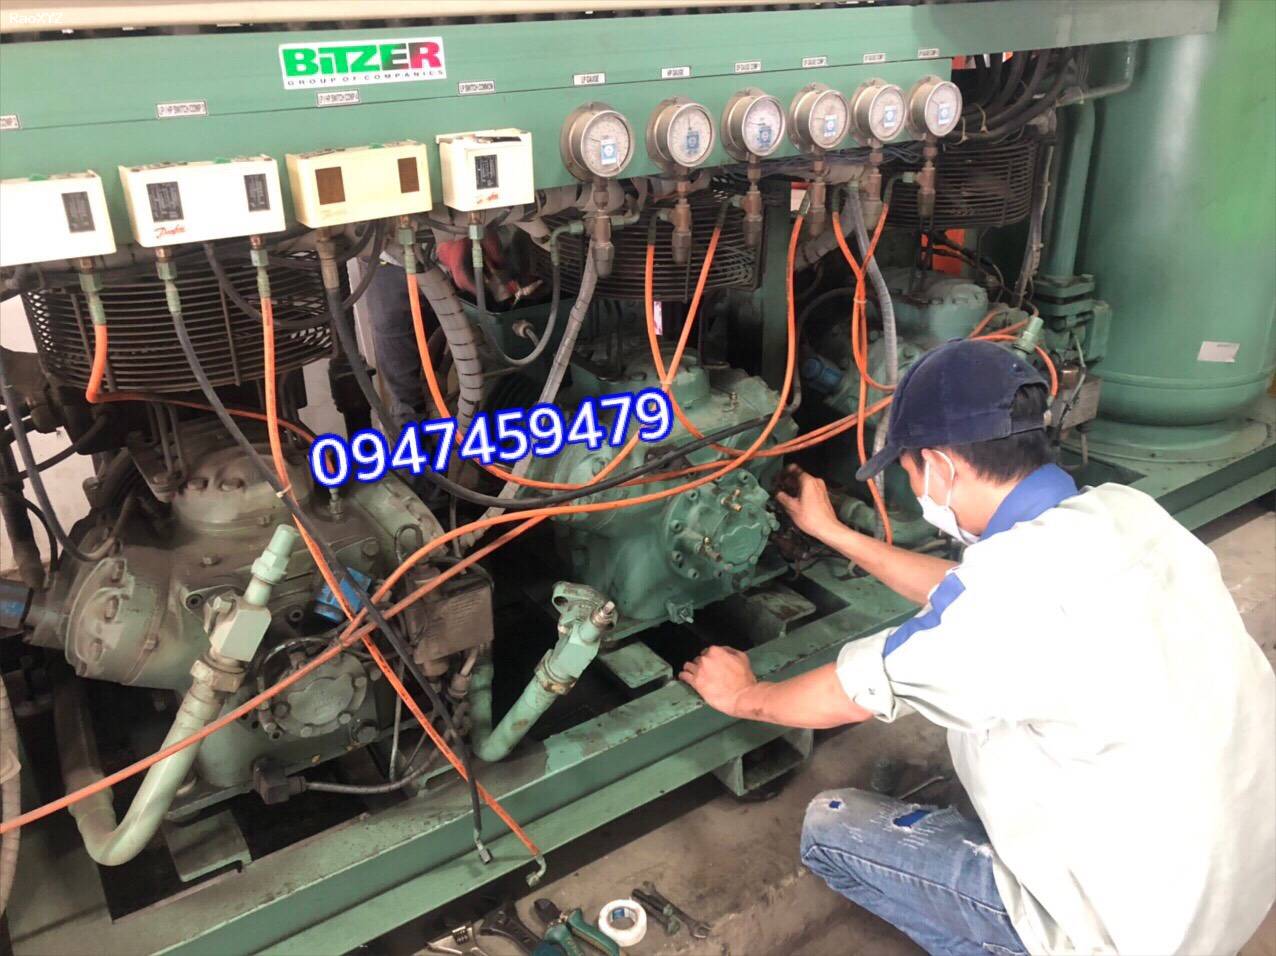 Nhận sửa chữa, bảo trì máy nén  bitzer chính hãng